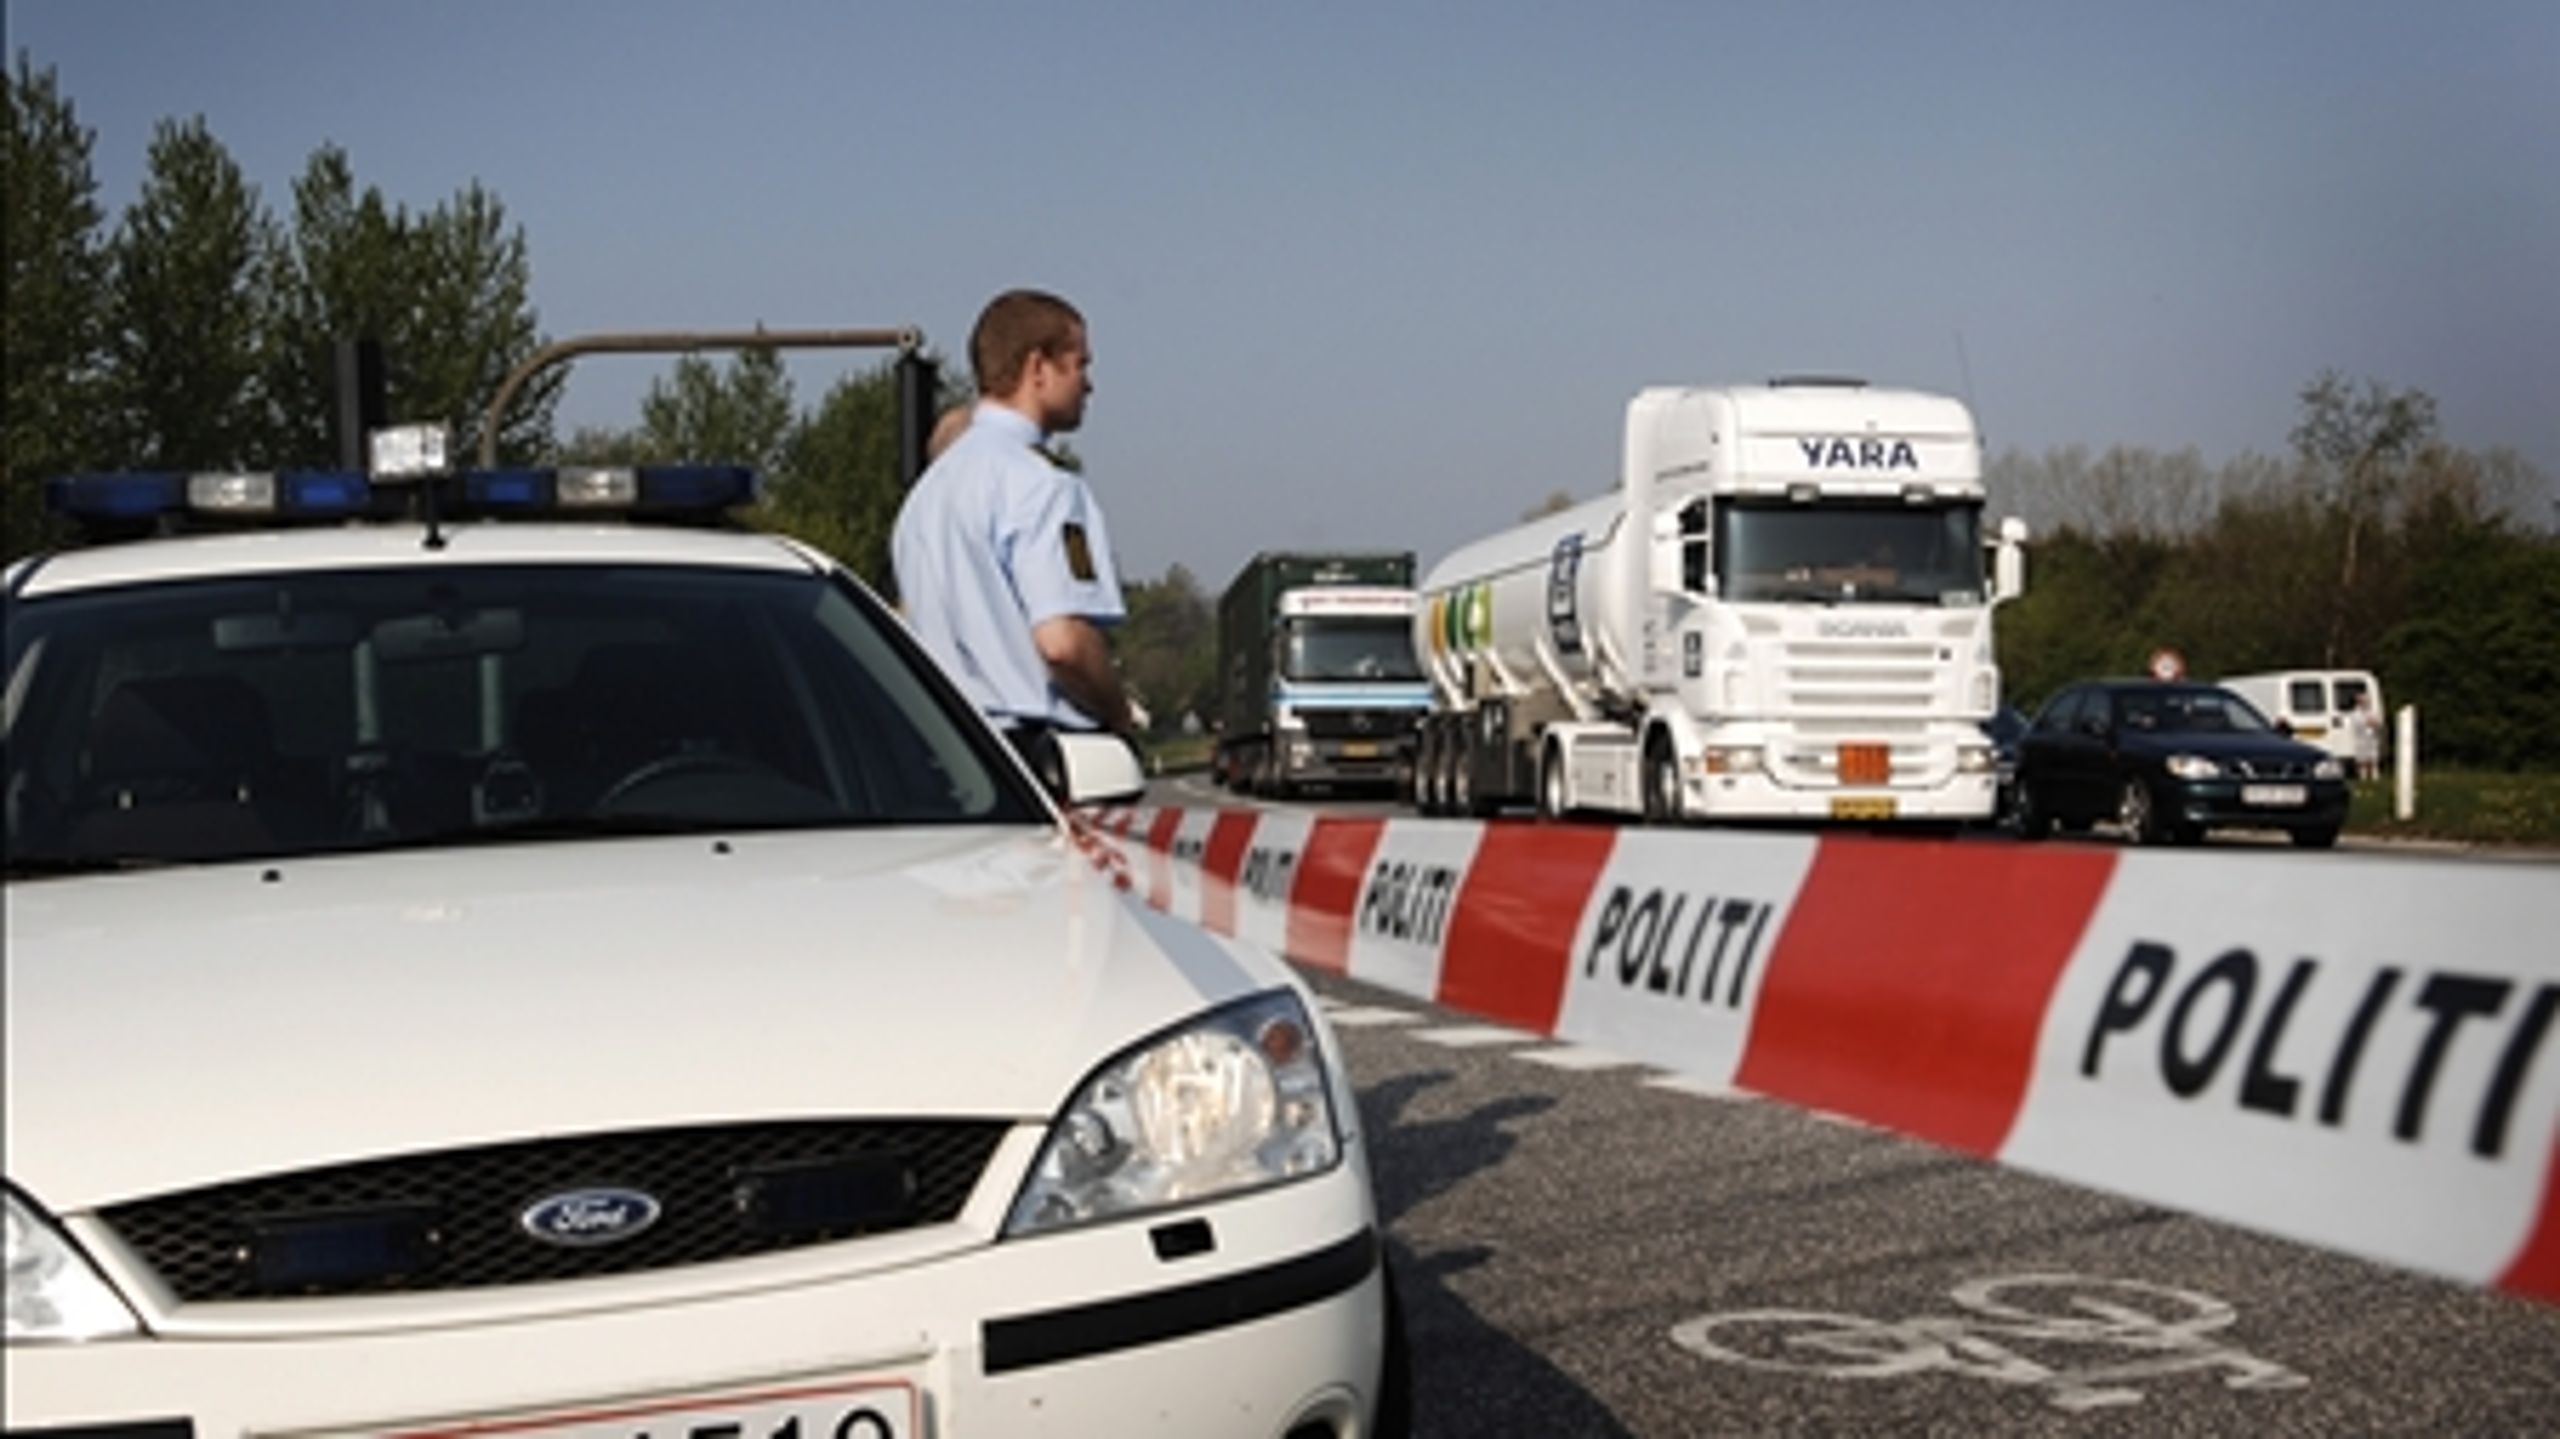 Forbud mod lastbiler i bymidten er ikke vejen til mere sikker trafik, mener Dansk Folkeparti.